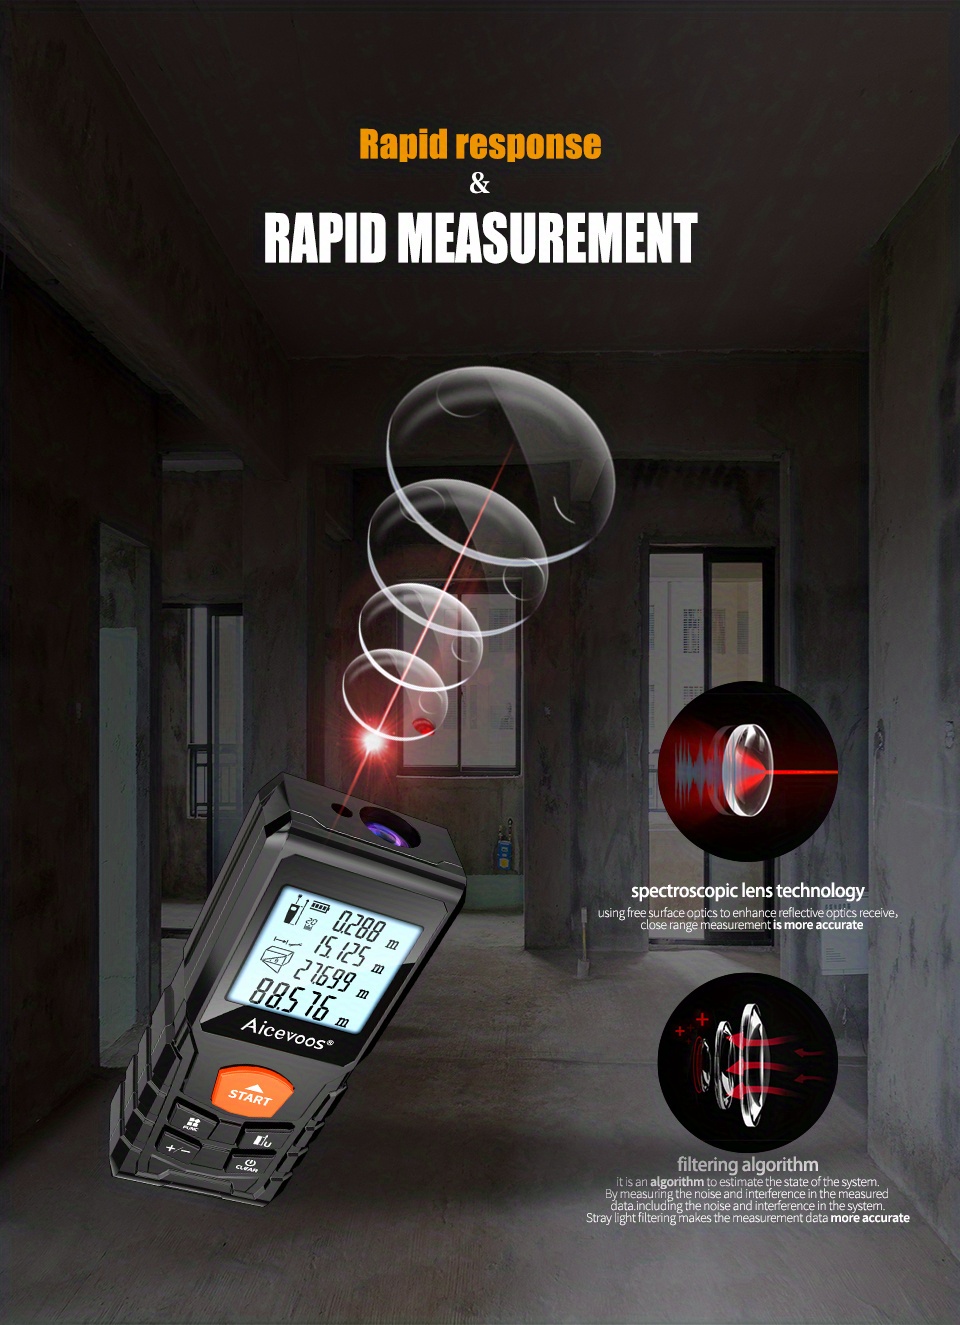 Mileseeydistance mètre Roulette électronique Bande numérique Télémètre  Trena Metro Laser Range Finder Ruban à mesurer